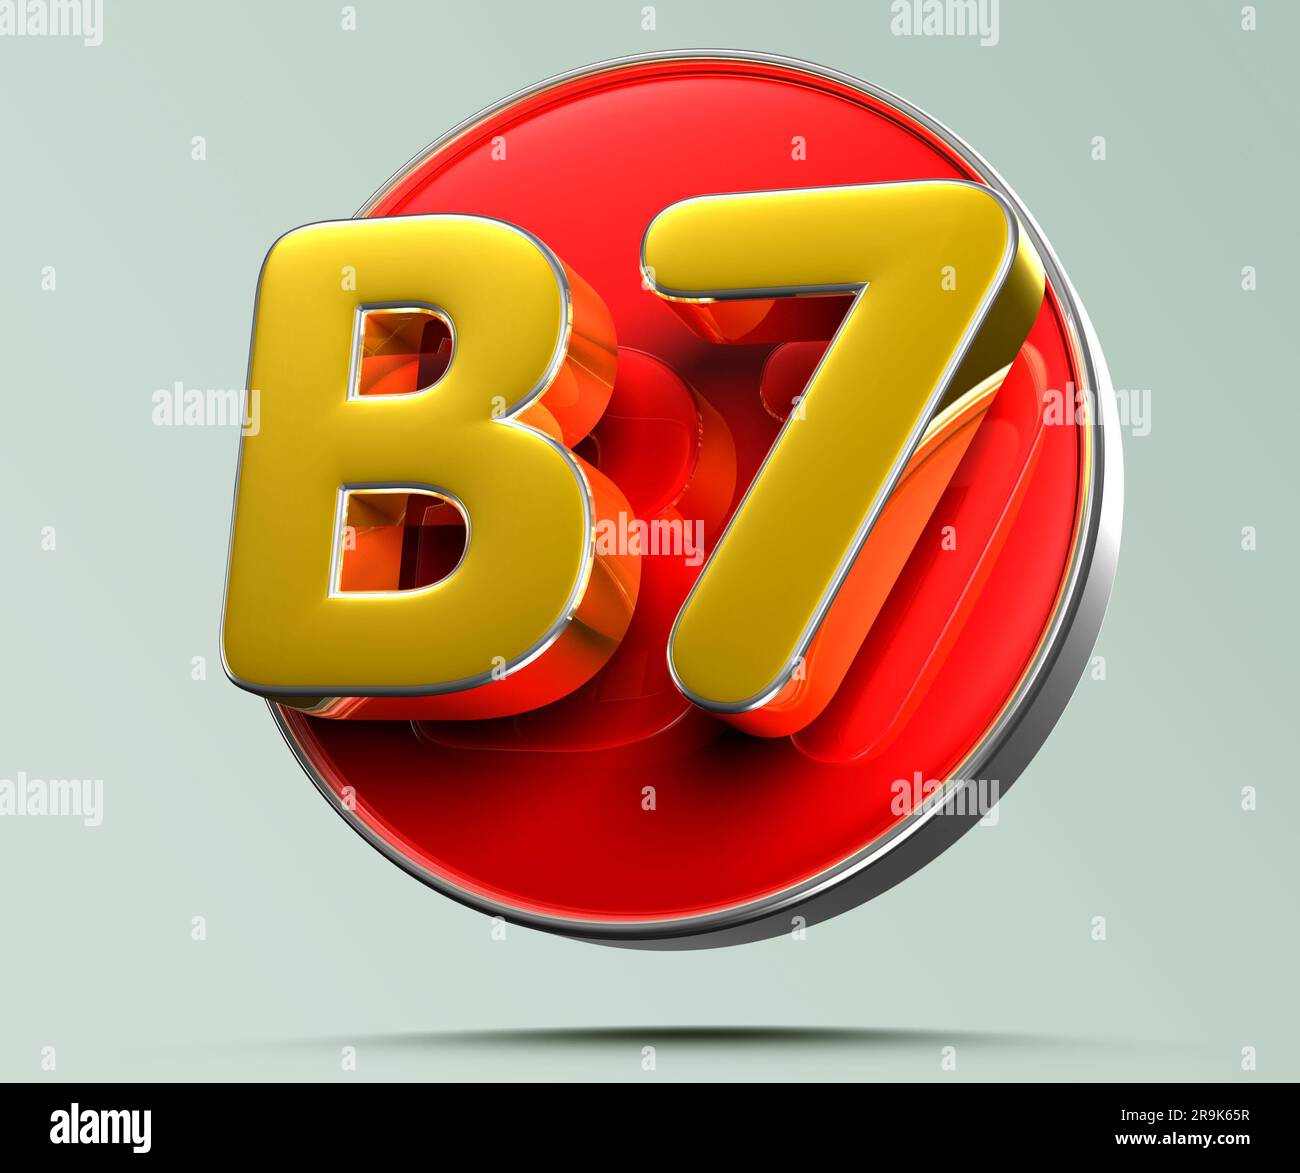 B7 or sur cercle rouge 3D illustration sur fond gris clair ont un chemin de travail. Panneaux publicitaires. Conception du produit. Ventes de produits. Code produit. Banque D'Images